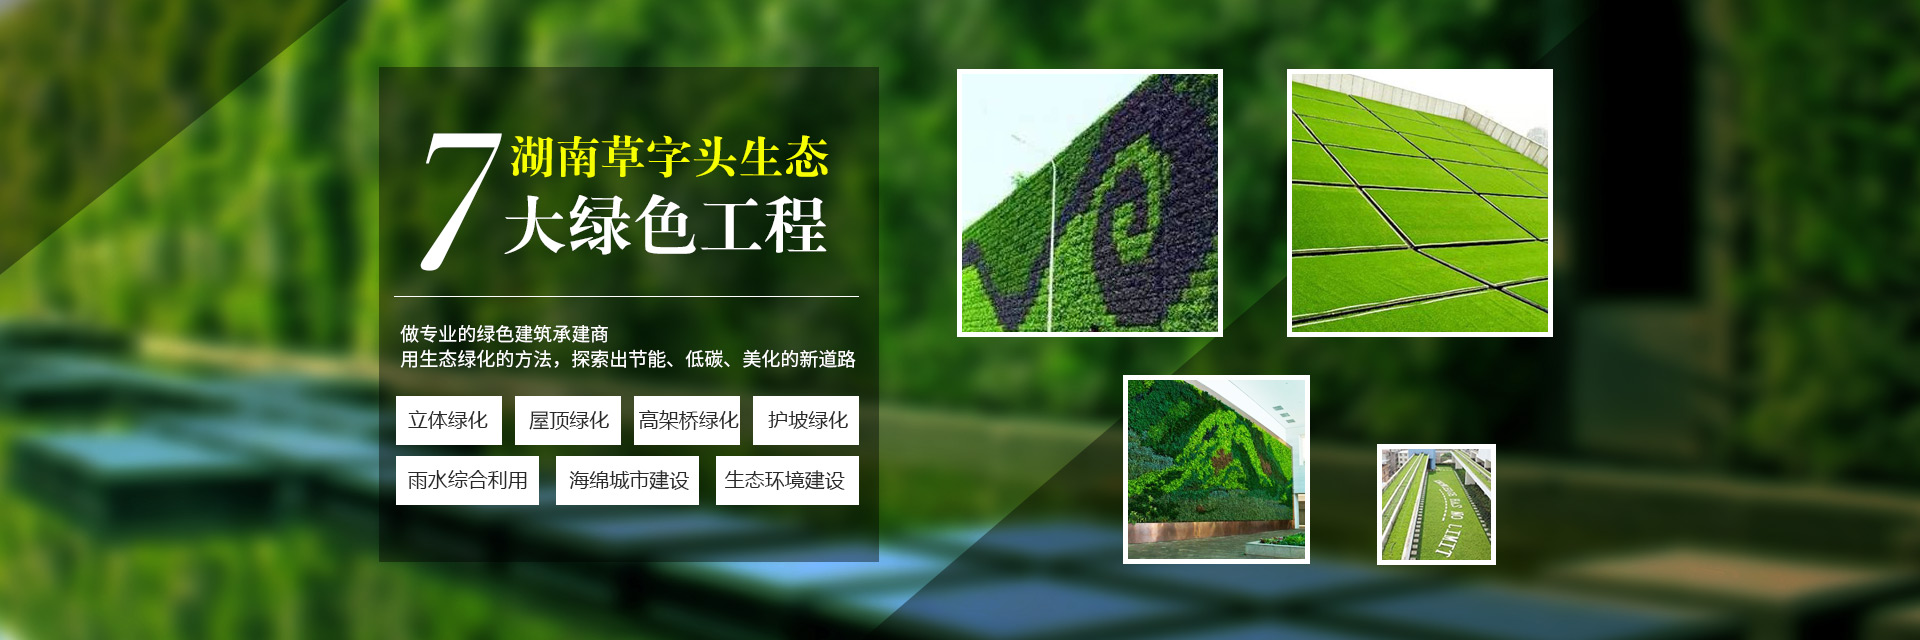 湖南草字头生态环境建设有限公司|专注于生态修复和绿化环保事业